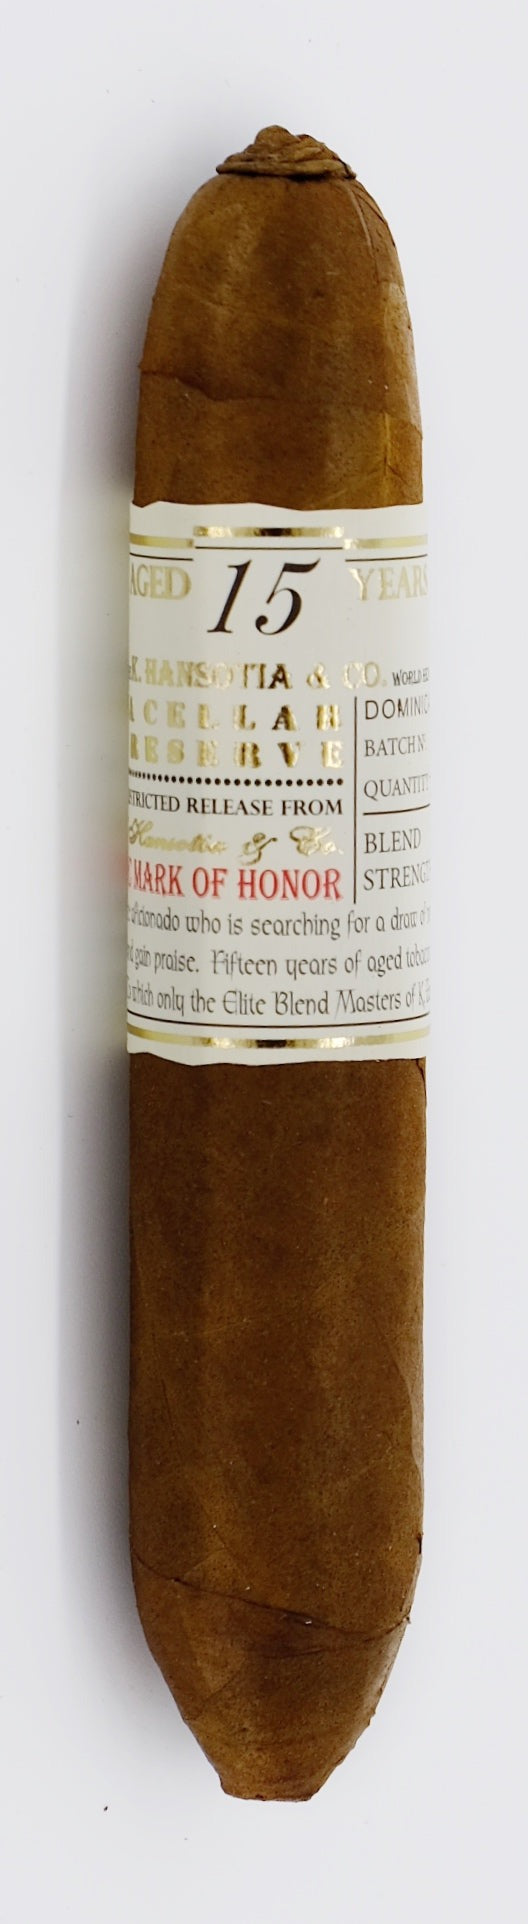 Gurkha Cellar Reserve 15 Years aged Zigarre im Robusto Format_einzelne Zigarre